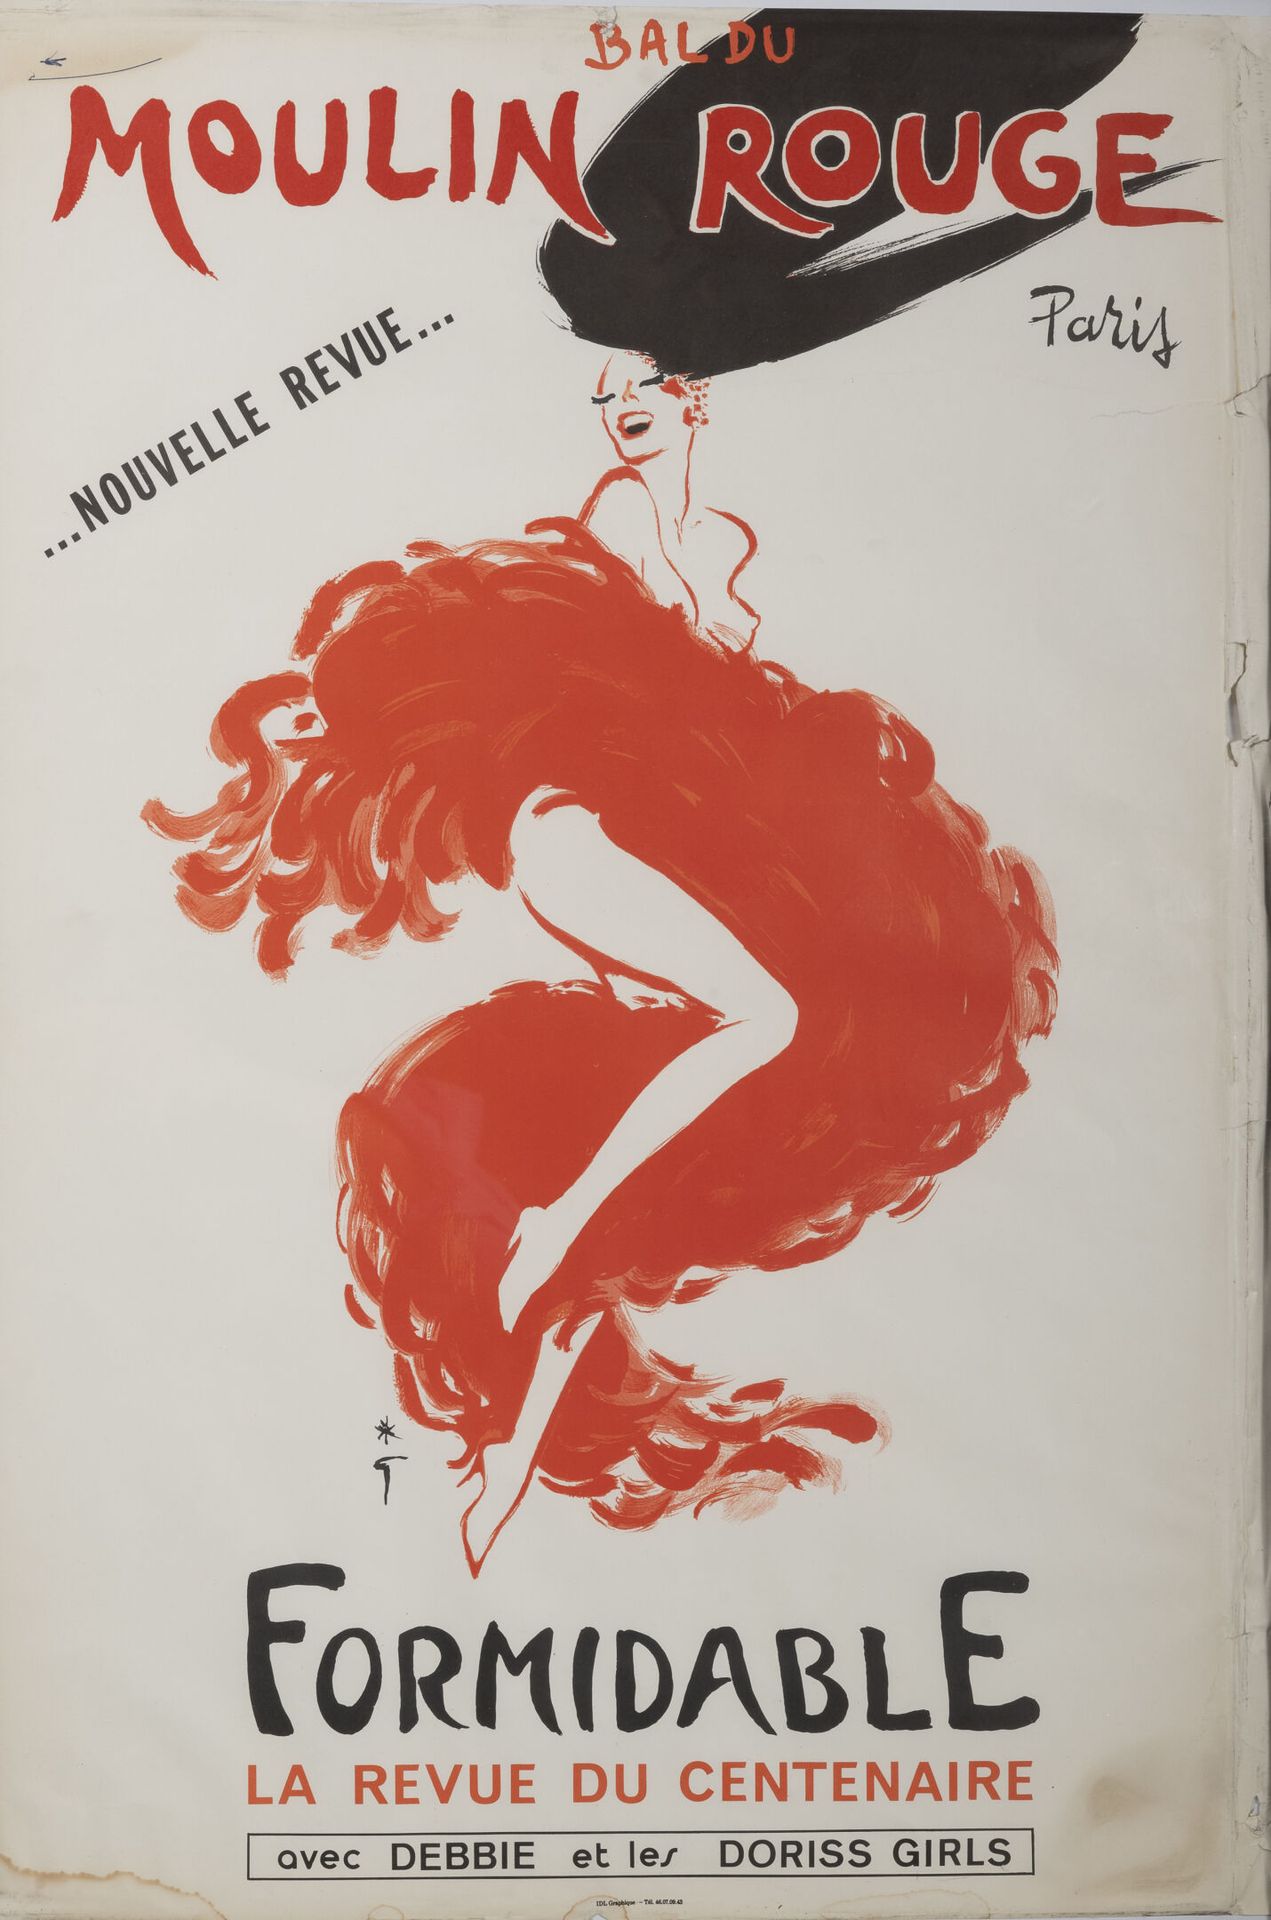 D'après René GRUAU Ball of the moulin rouge. New review.

Great centennial revue&hellip;